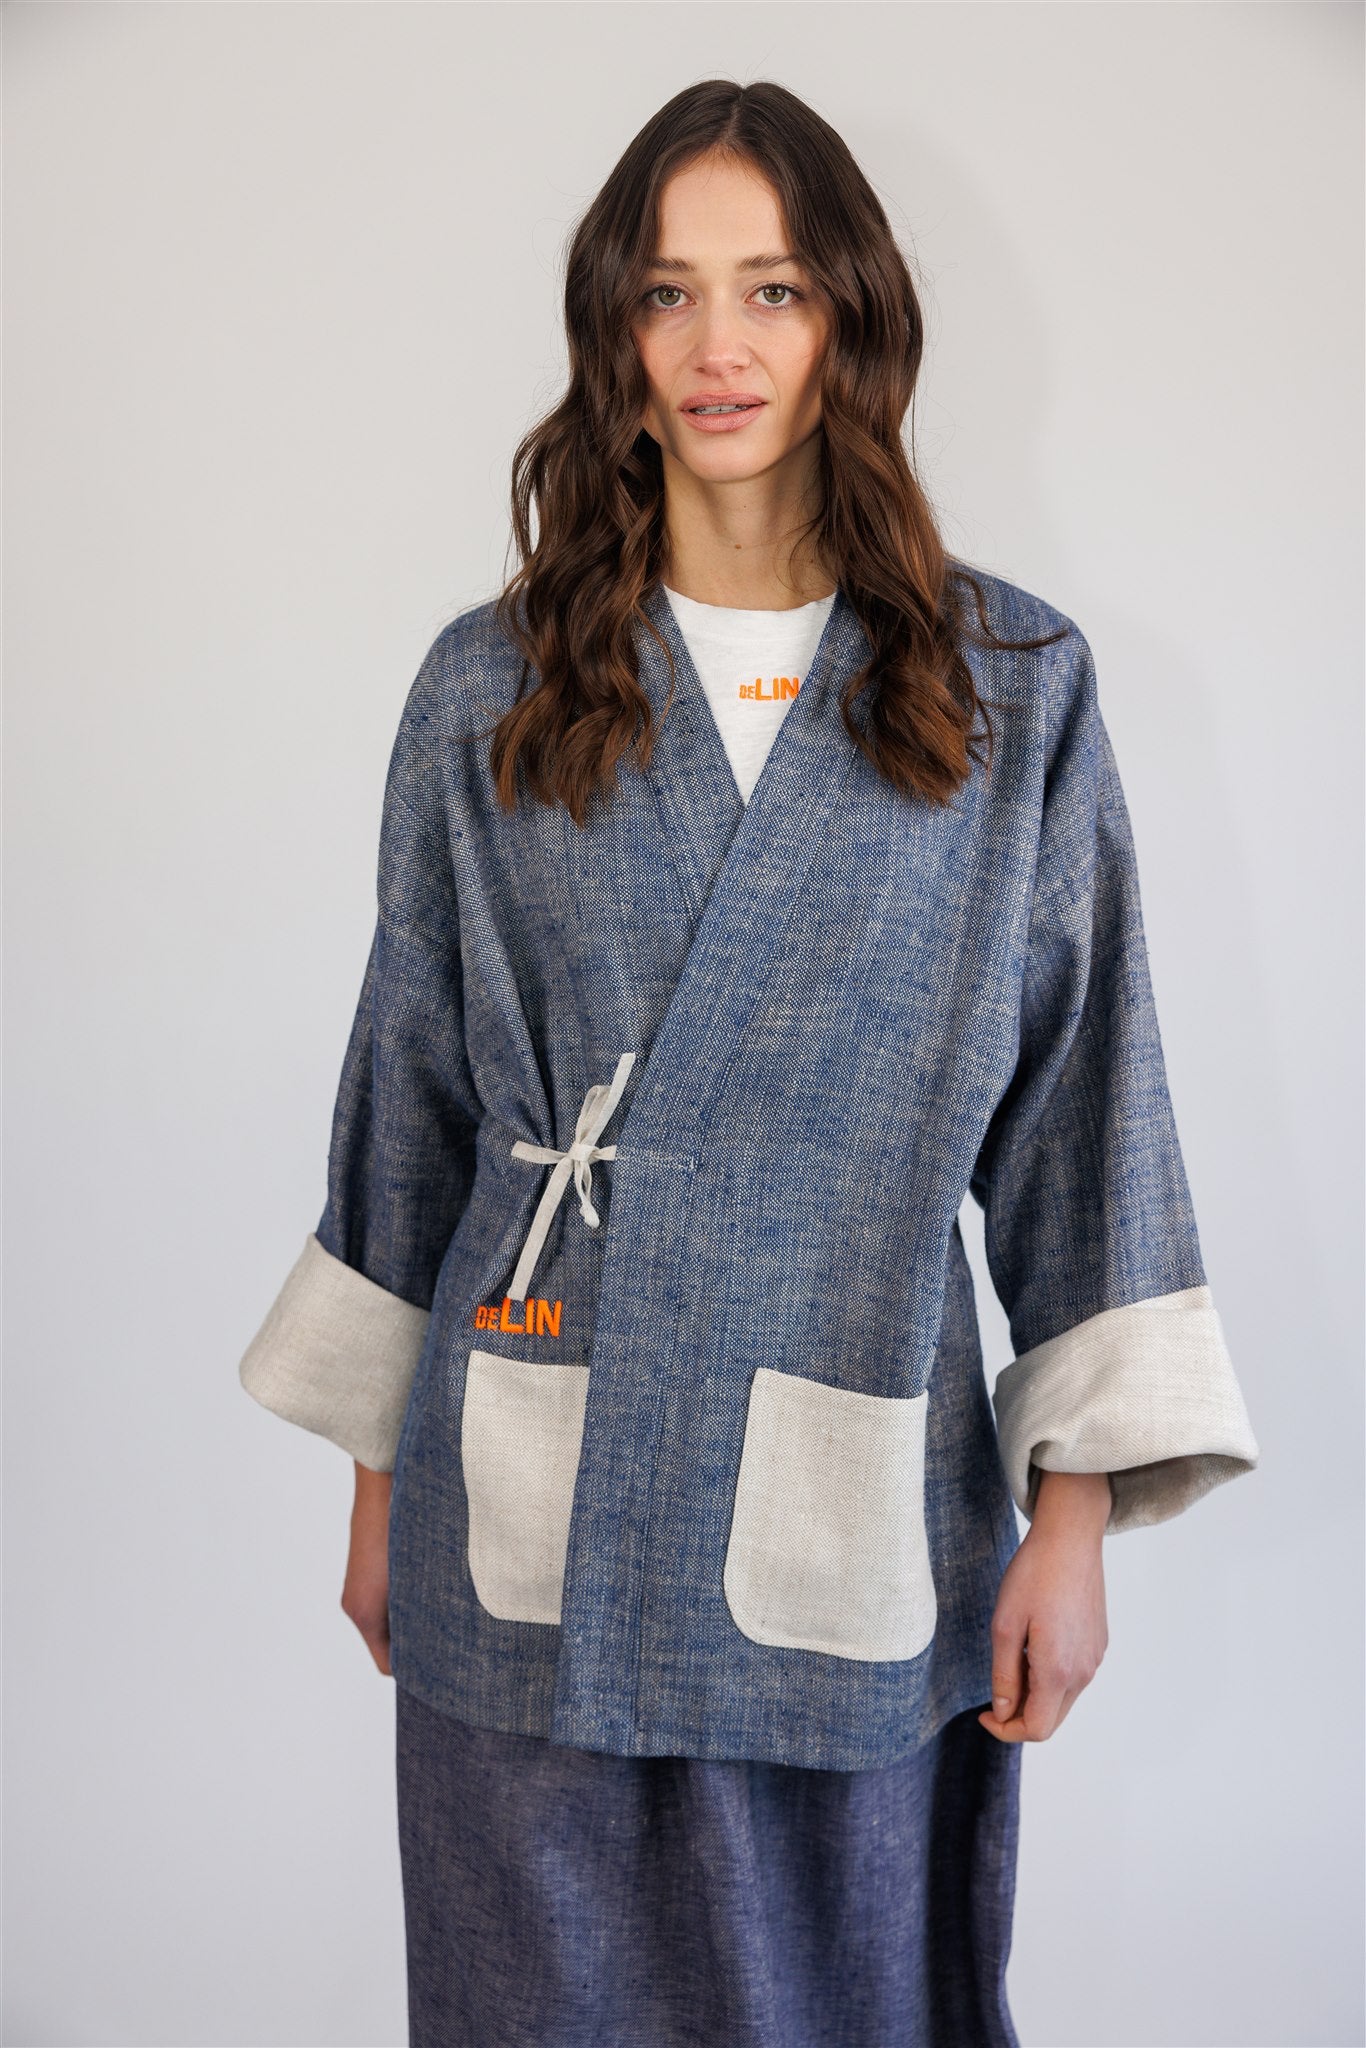 The Kimono